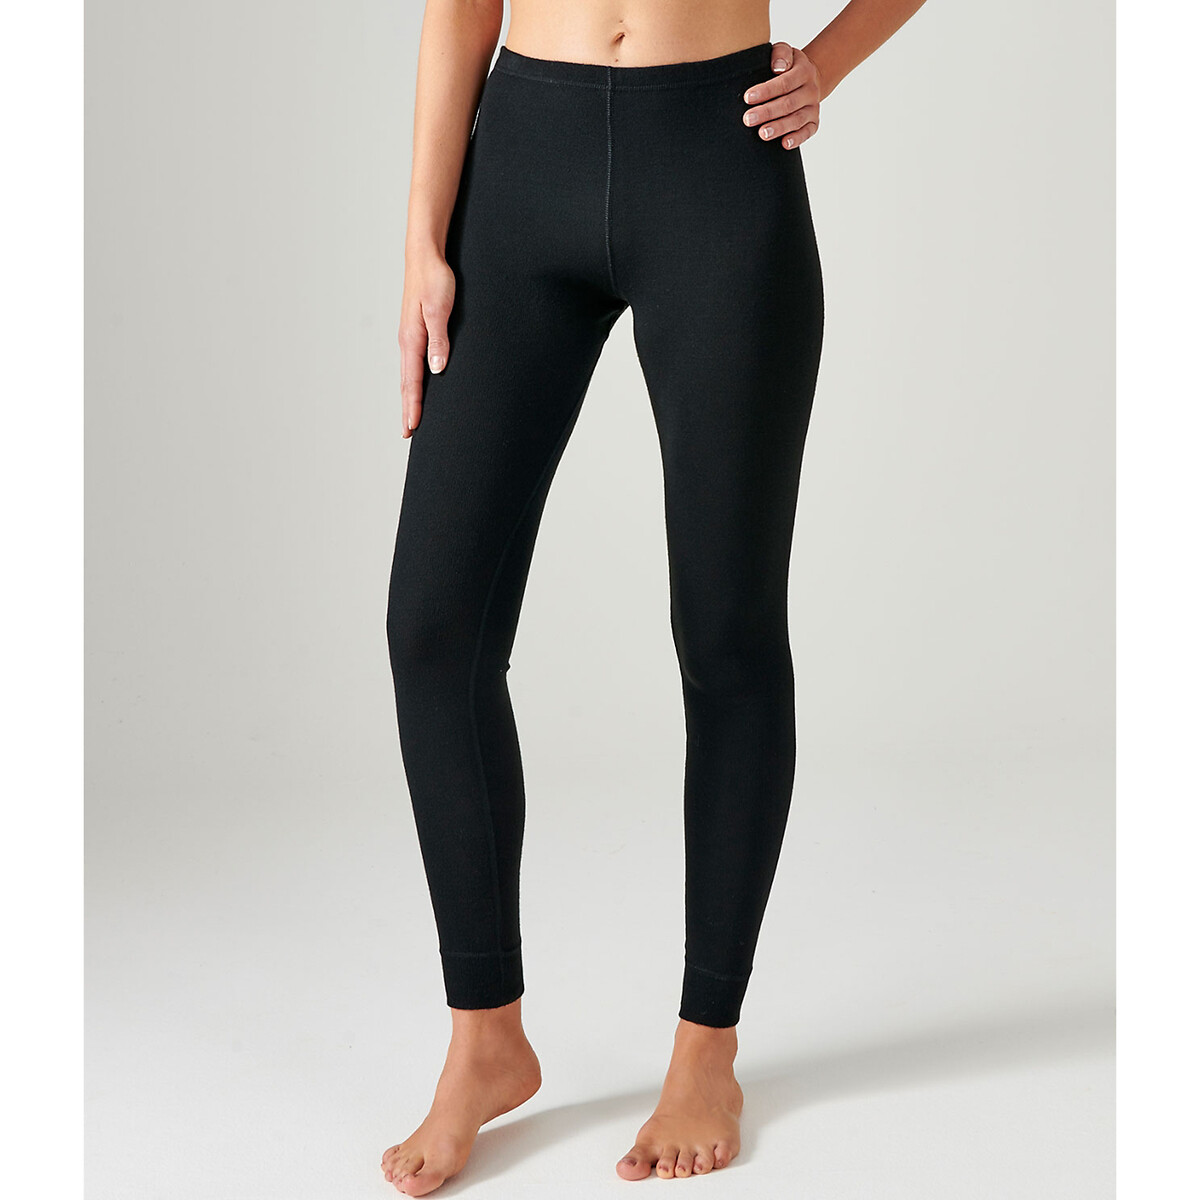 Ladies Damart Fleece Feel Casual Trousers/ Jog Pants- Beige- UK Size 14/16  NEW | eBay